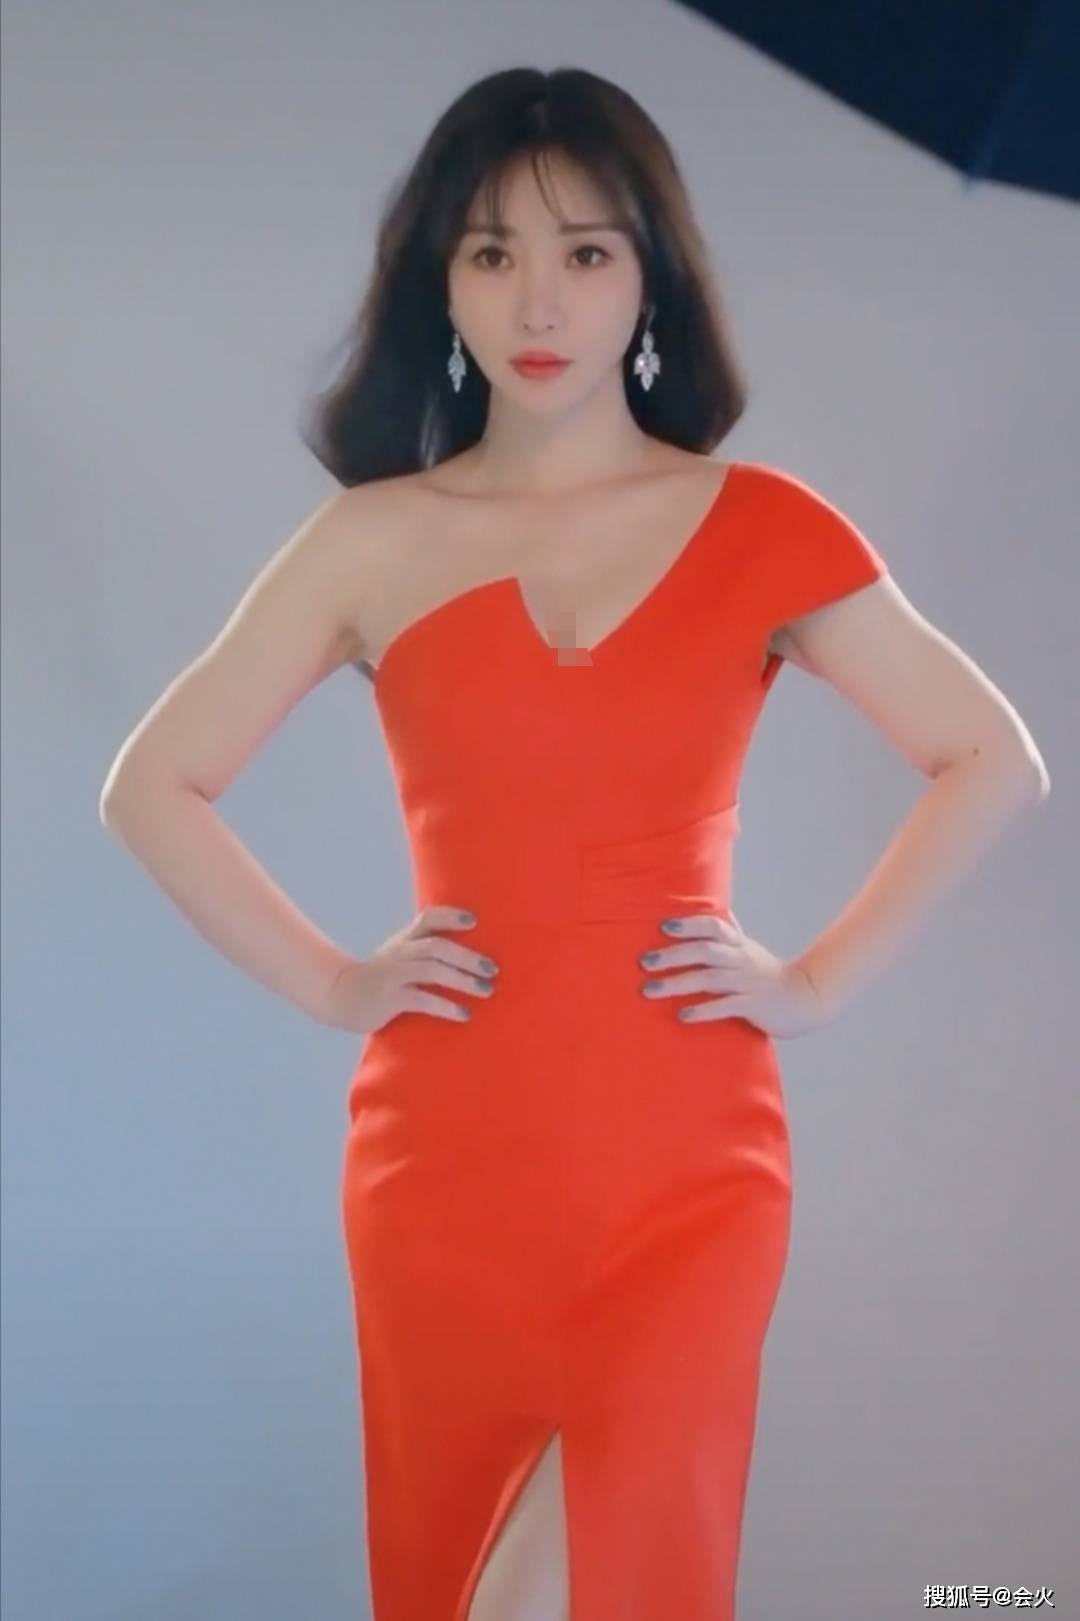 视频中的柳岩一改保守路线,穿着一条性感的橘红色单间深v长裙